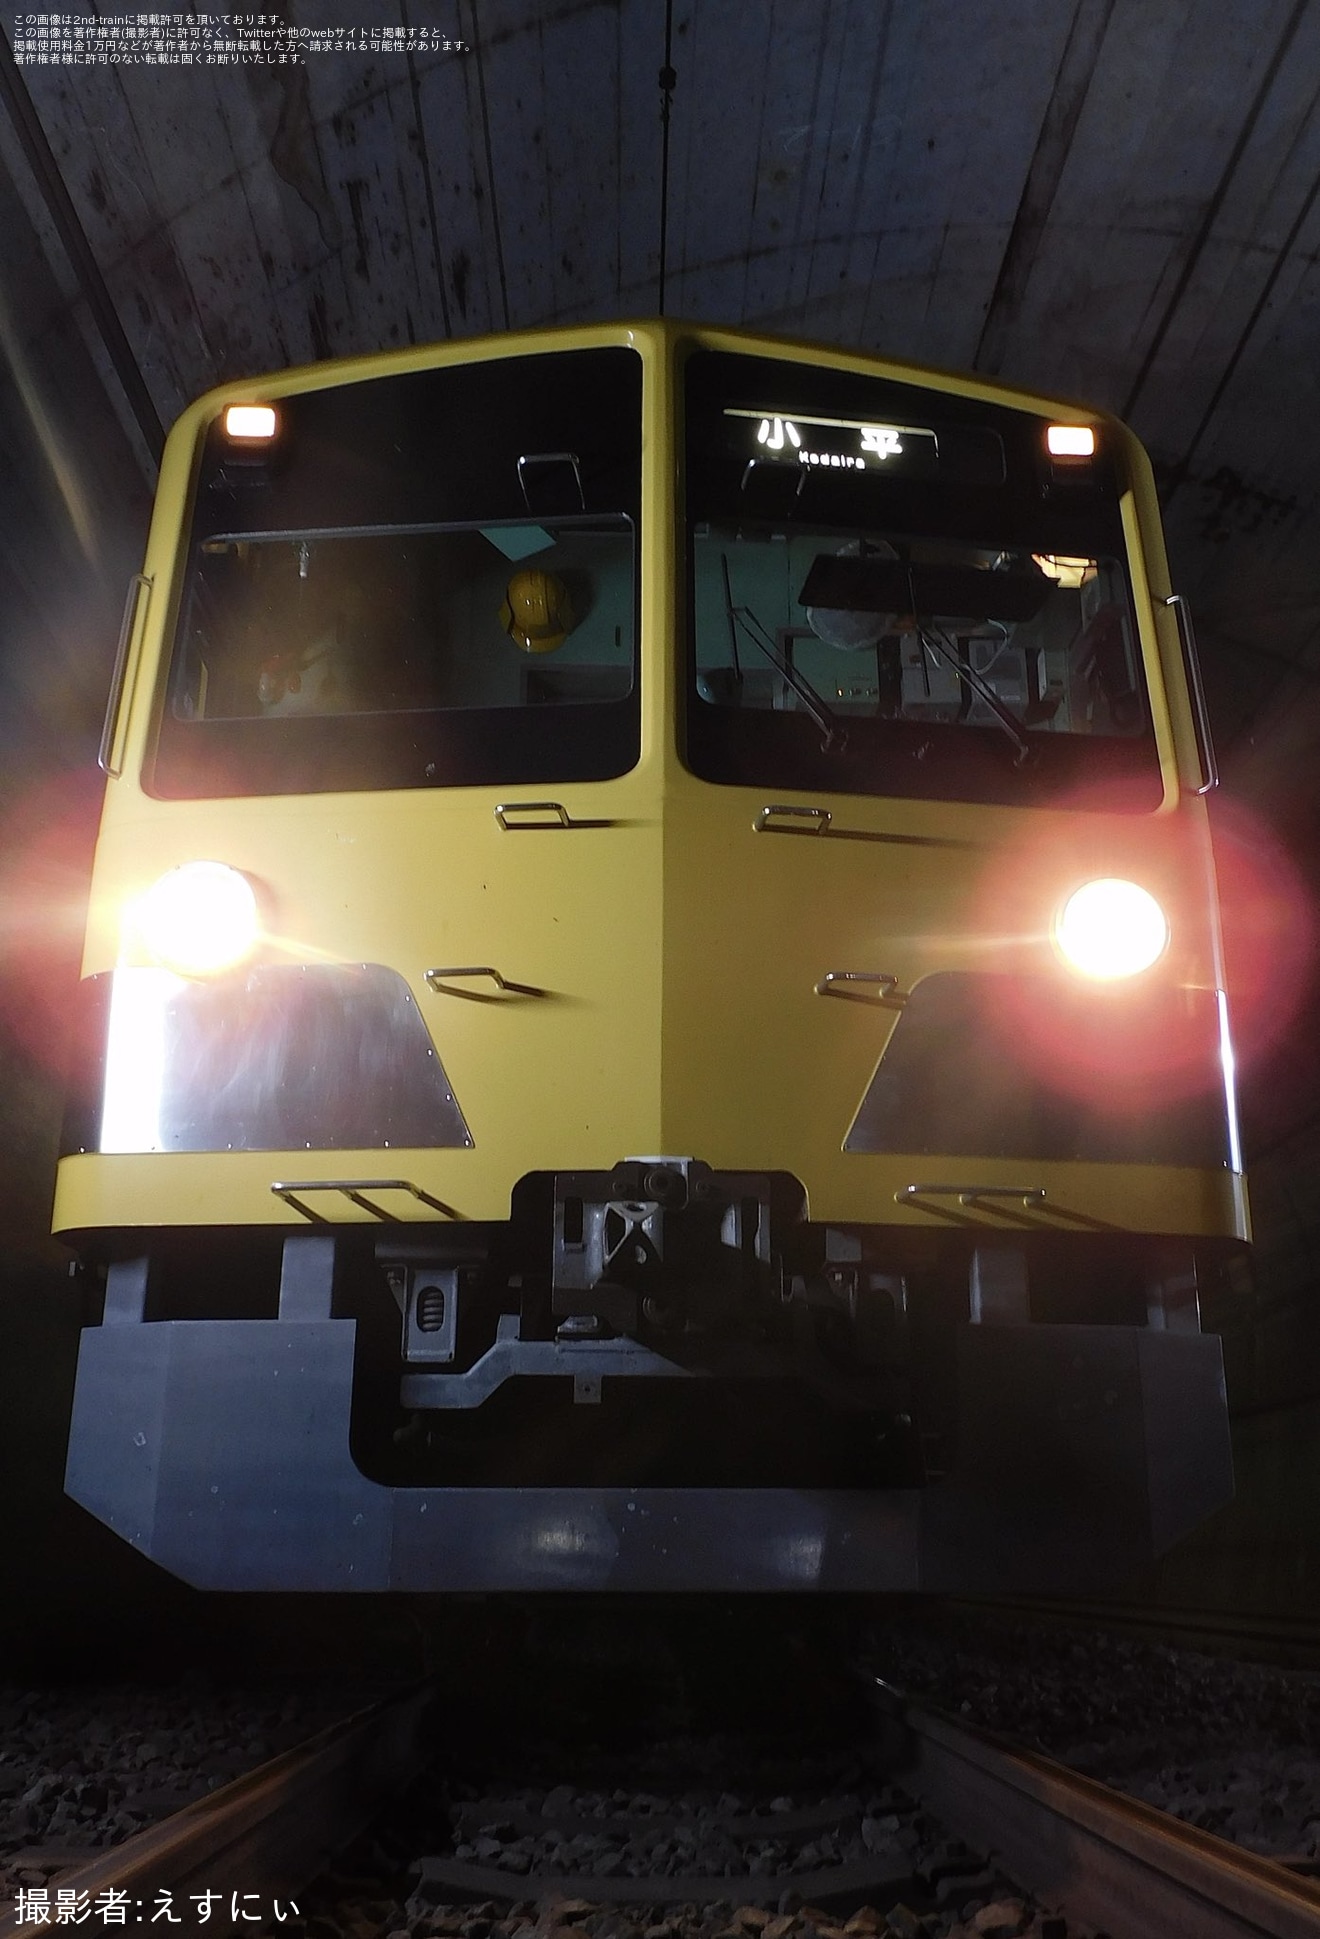 【西武】「『正丸トンネル』で電車を撮ろう」撮影会開催の拡大写真